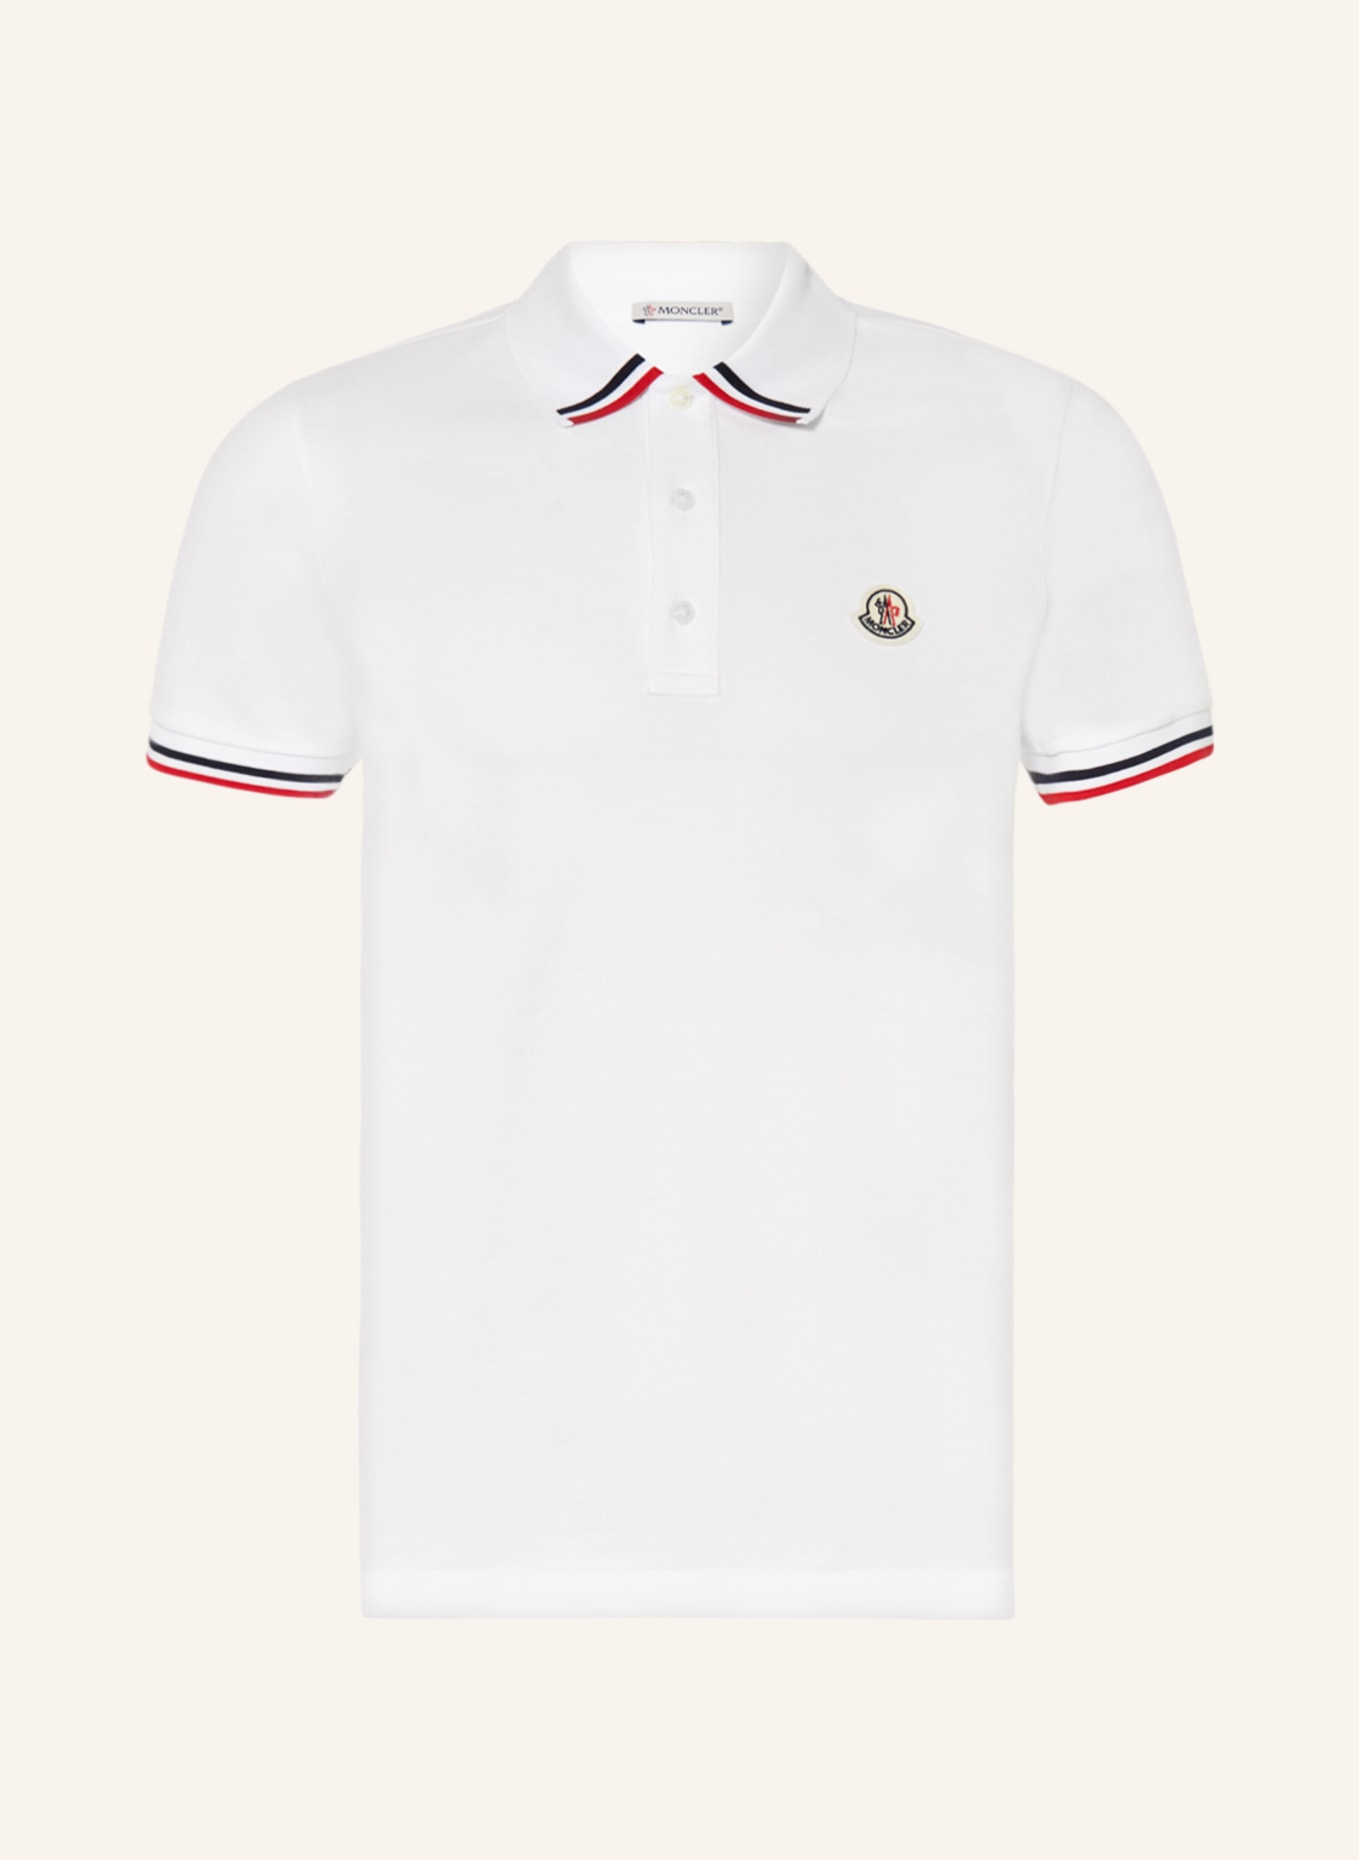 MONCLER Piqué polo shirt, Color: WHITE (Image 1)